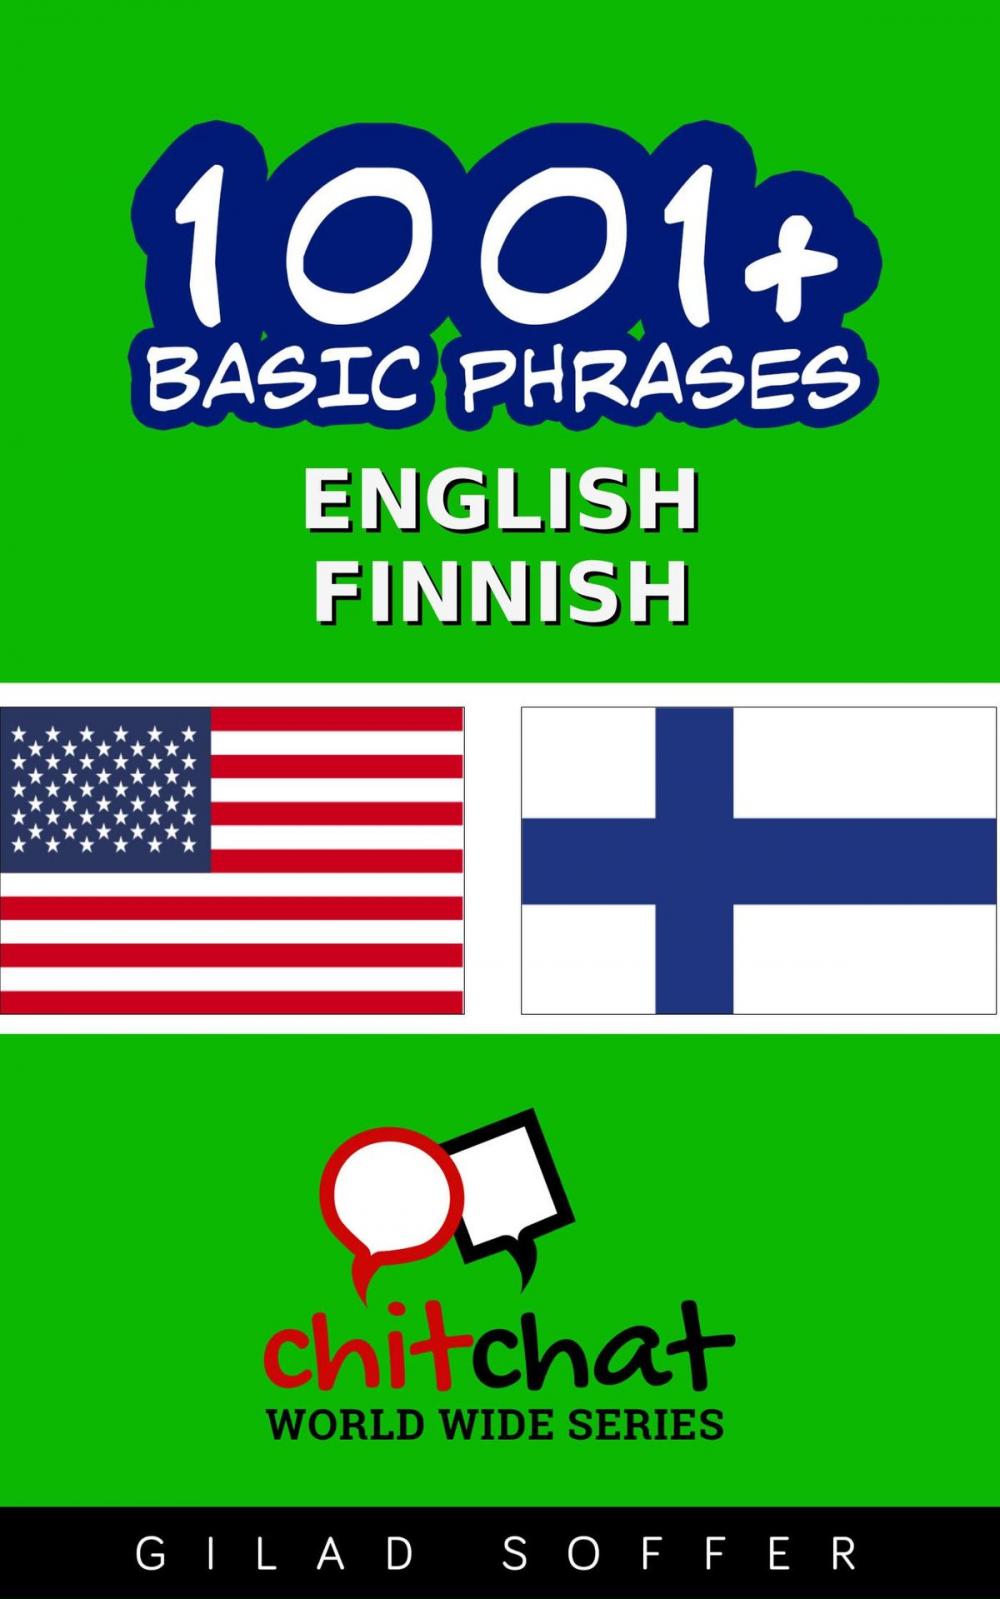 Big bigCover of 1001+ Basic Phrases English - Finnish